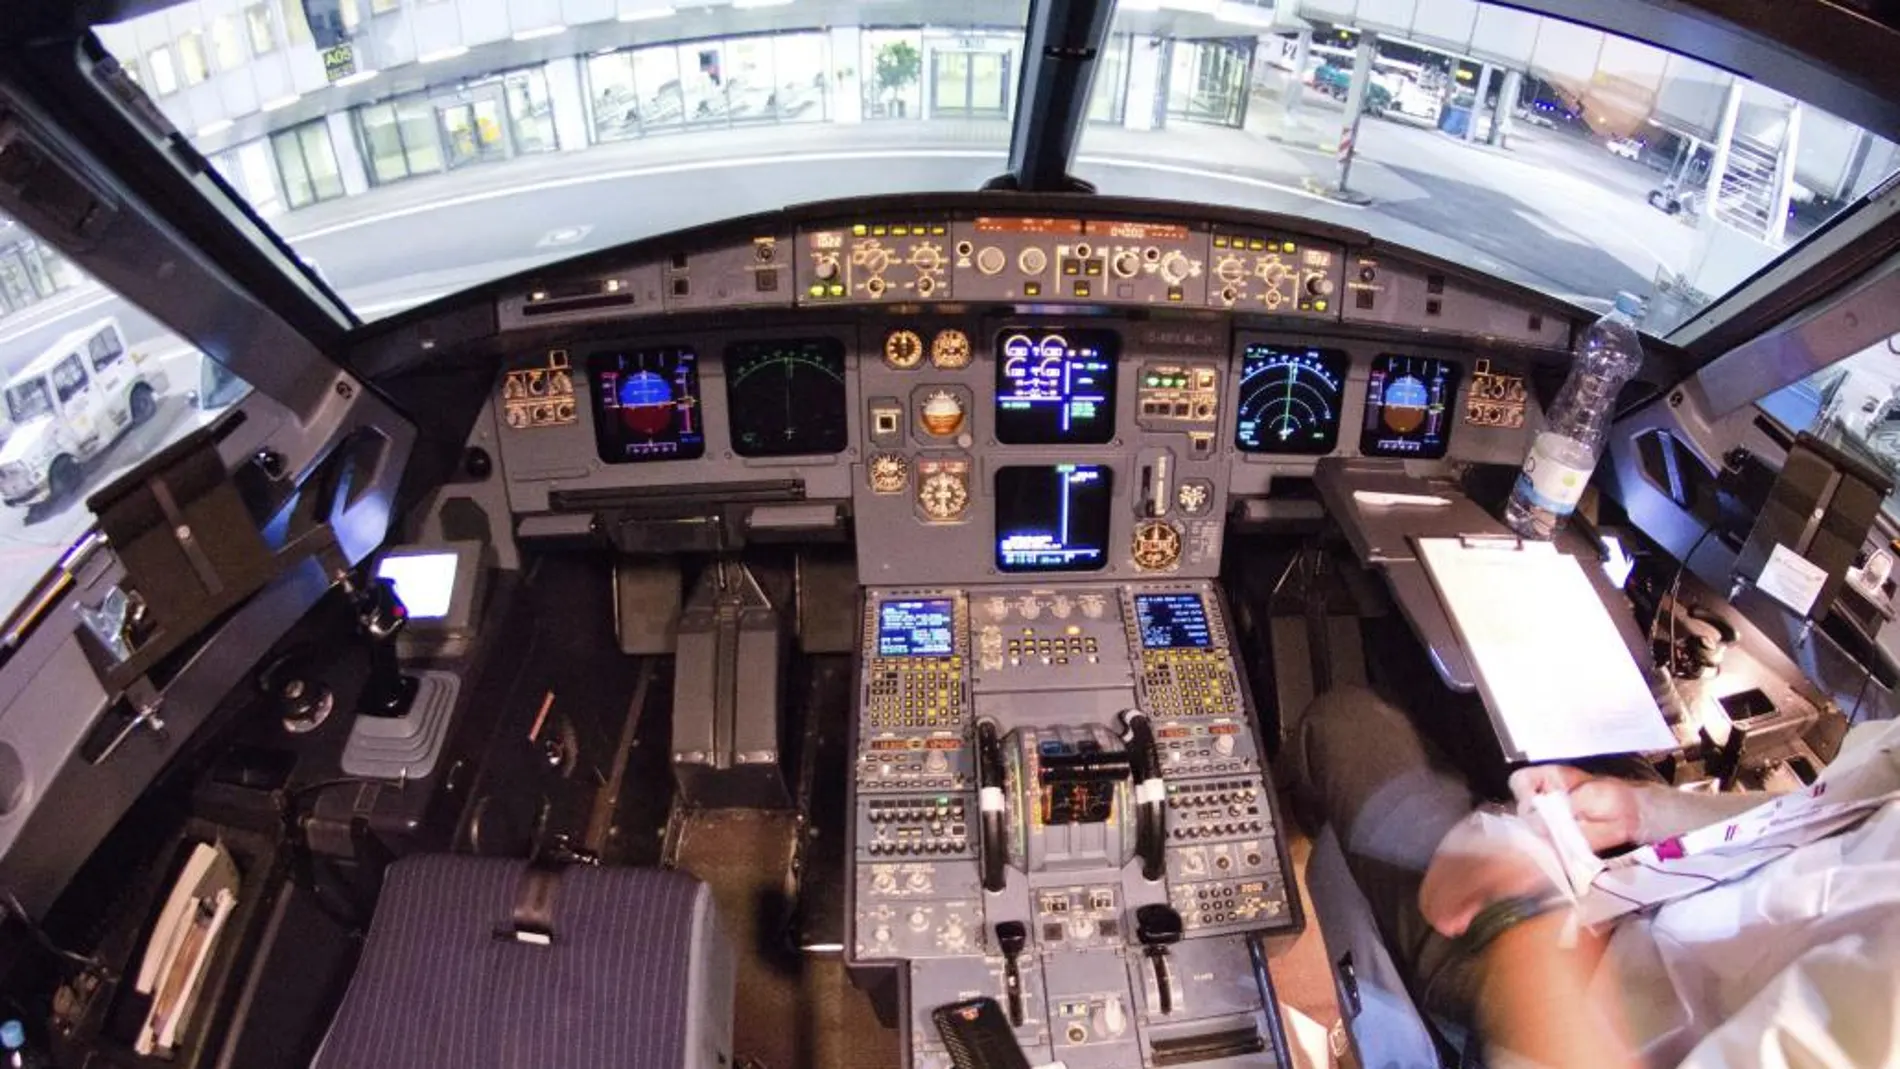 Fotografía facilitada ayer que muestra la cabina o "cockpit"del Airbus A320 siniestrado en los Alpes